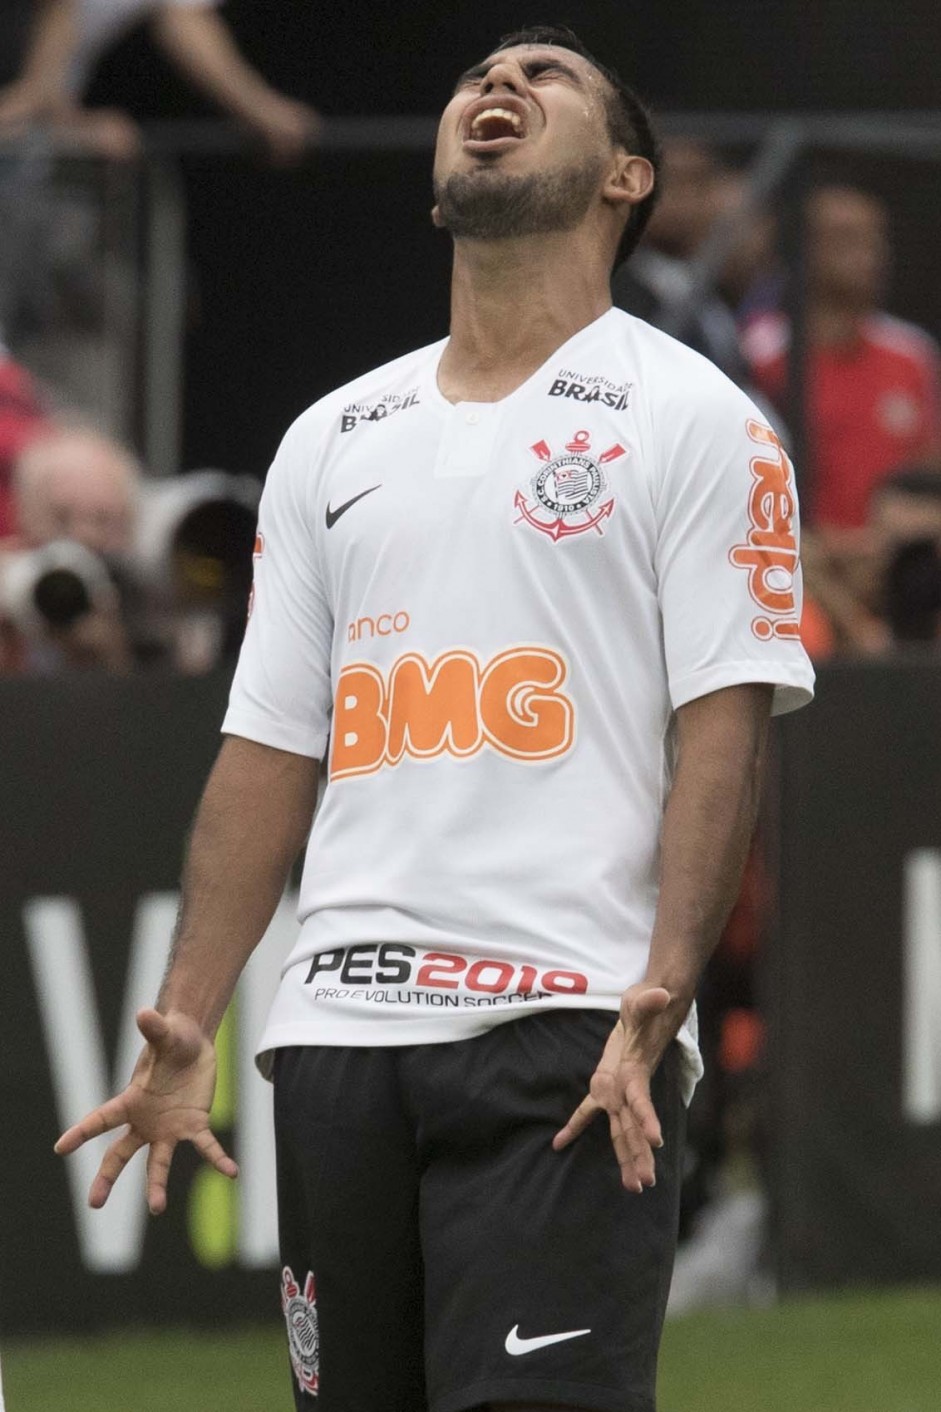 Sornoza durante empate com So Caetano na Arena Corinthians